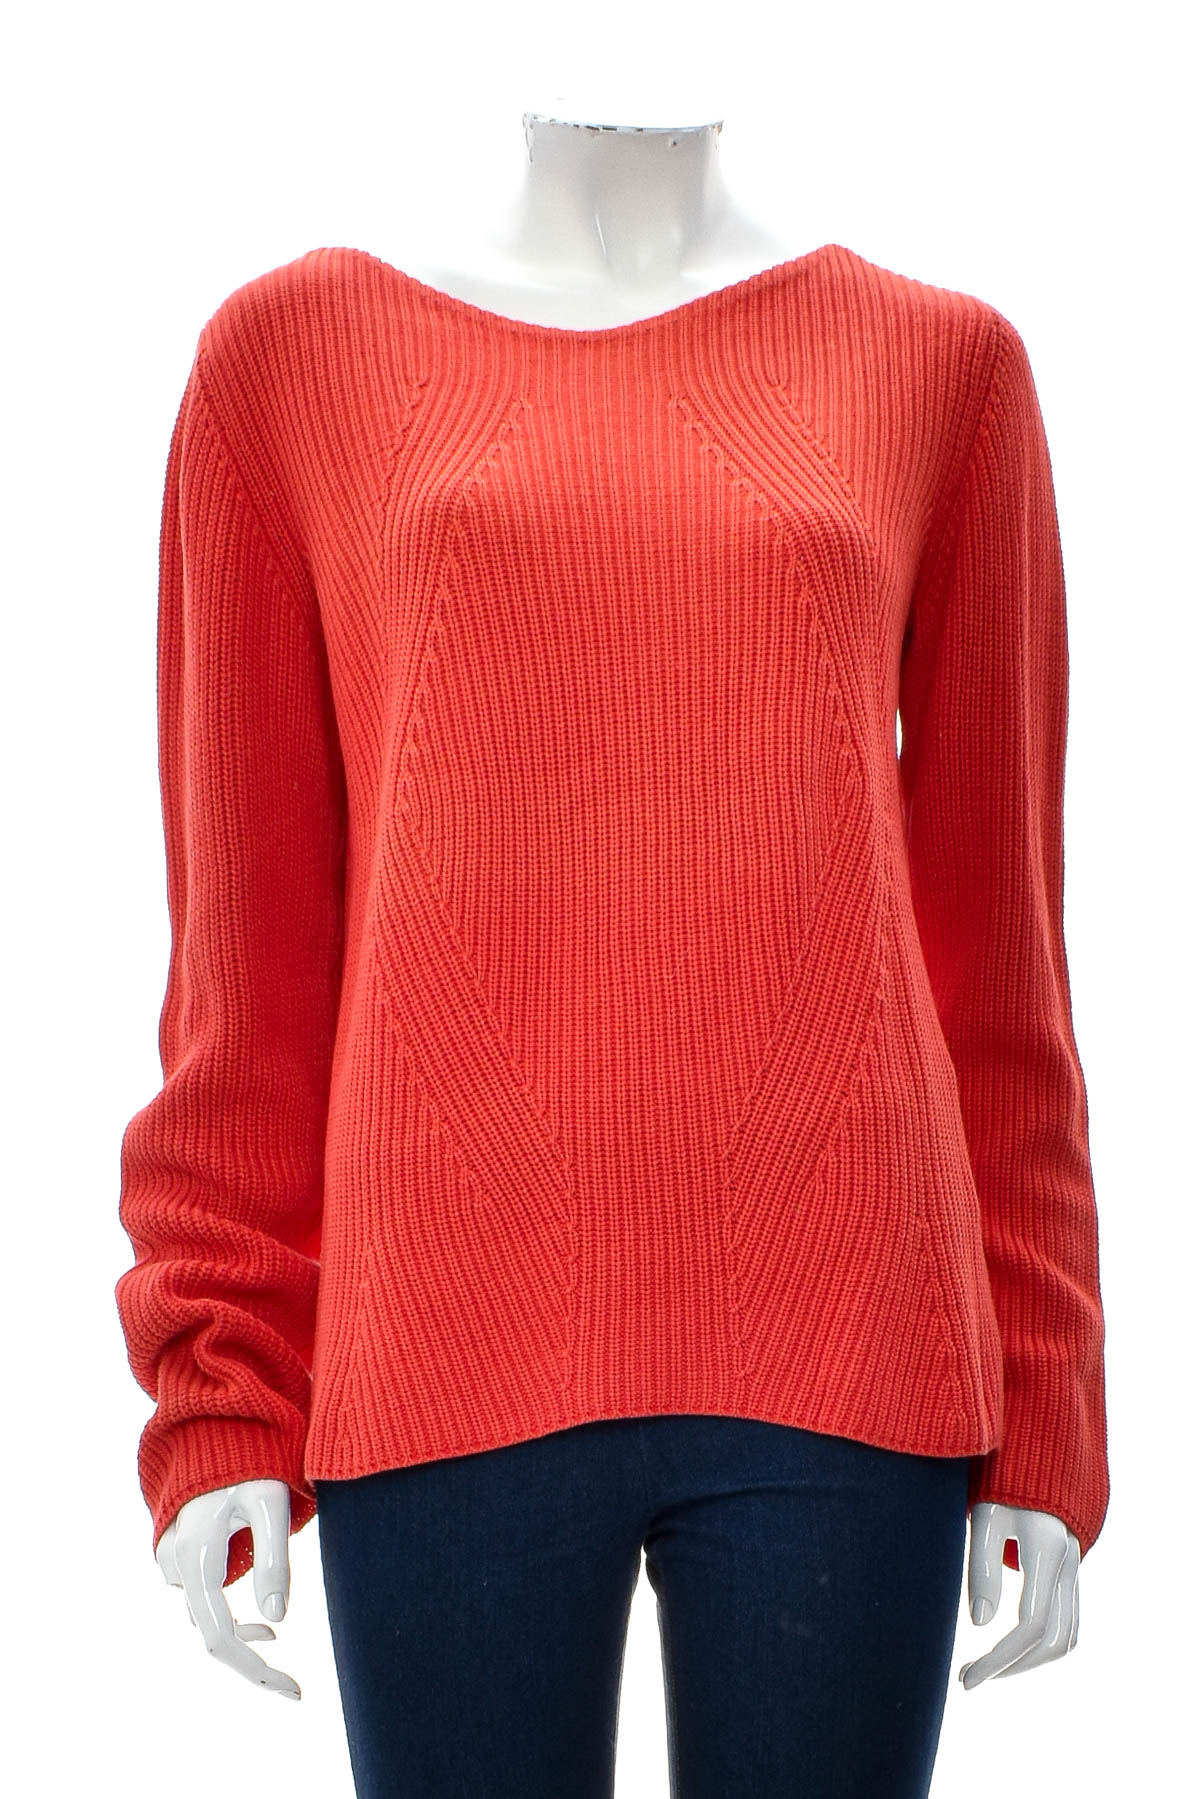 Women's sweater - Lieblingsstuck - 0